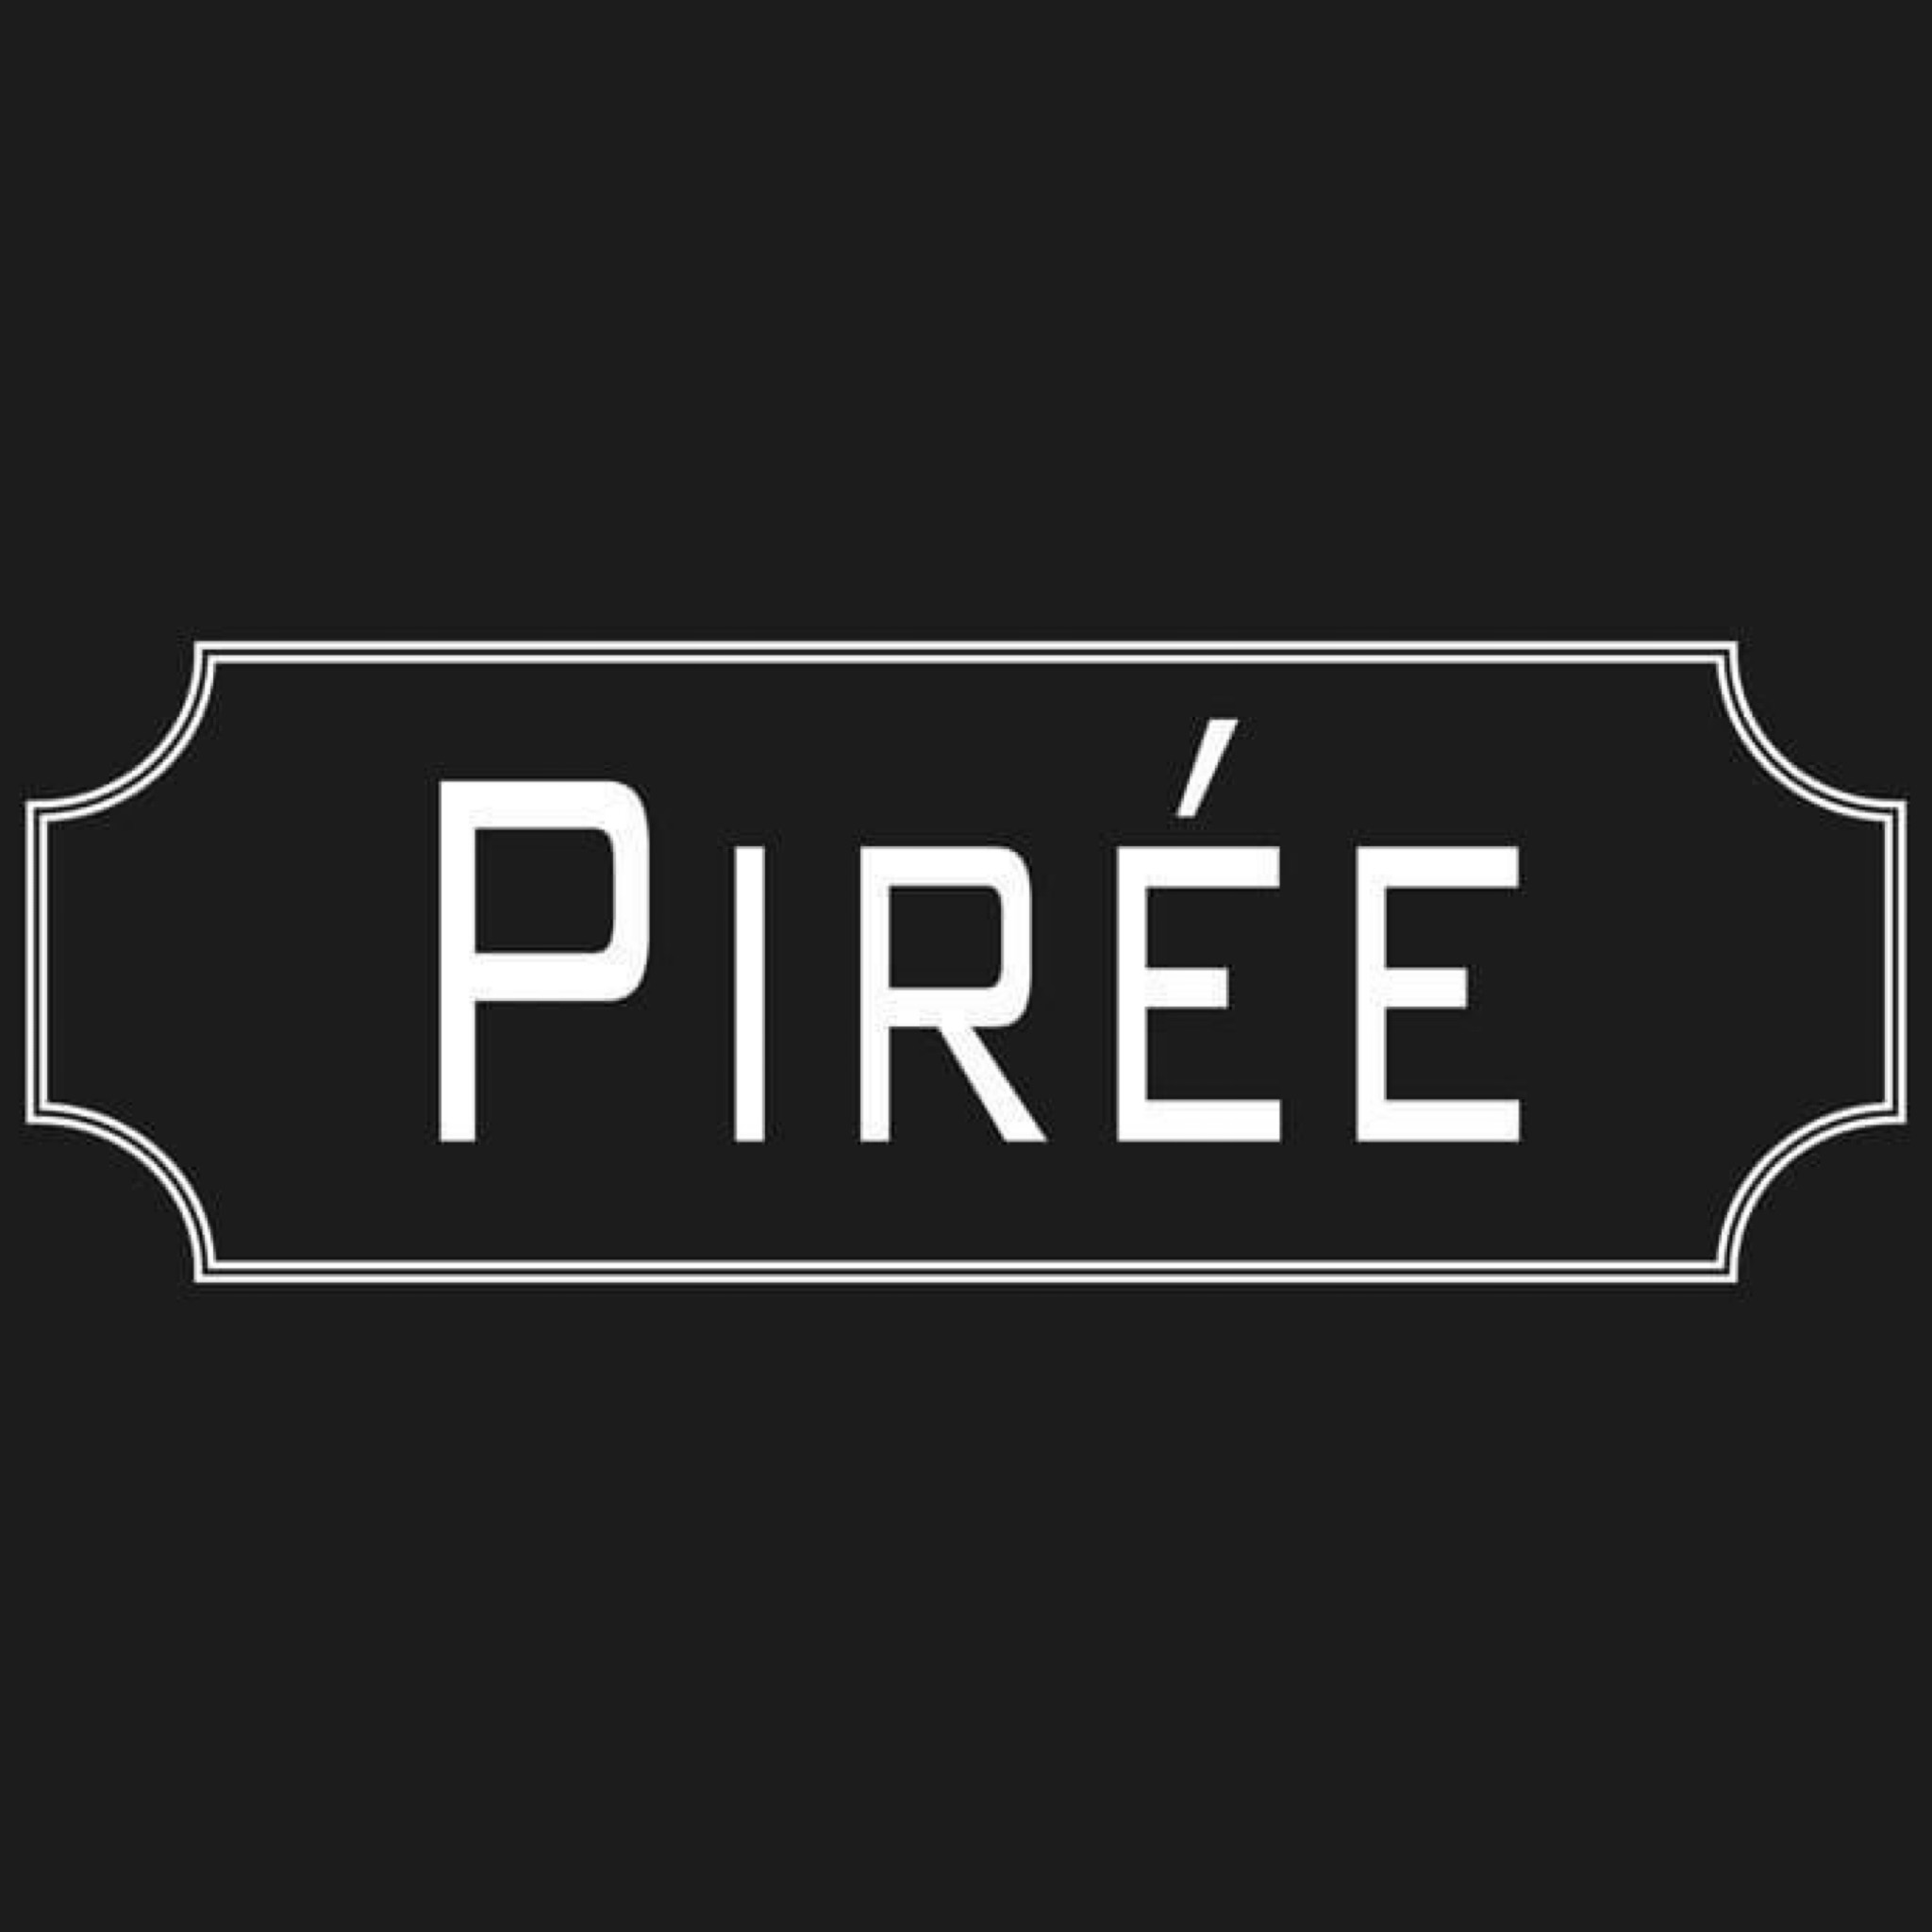 Piree